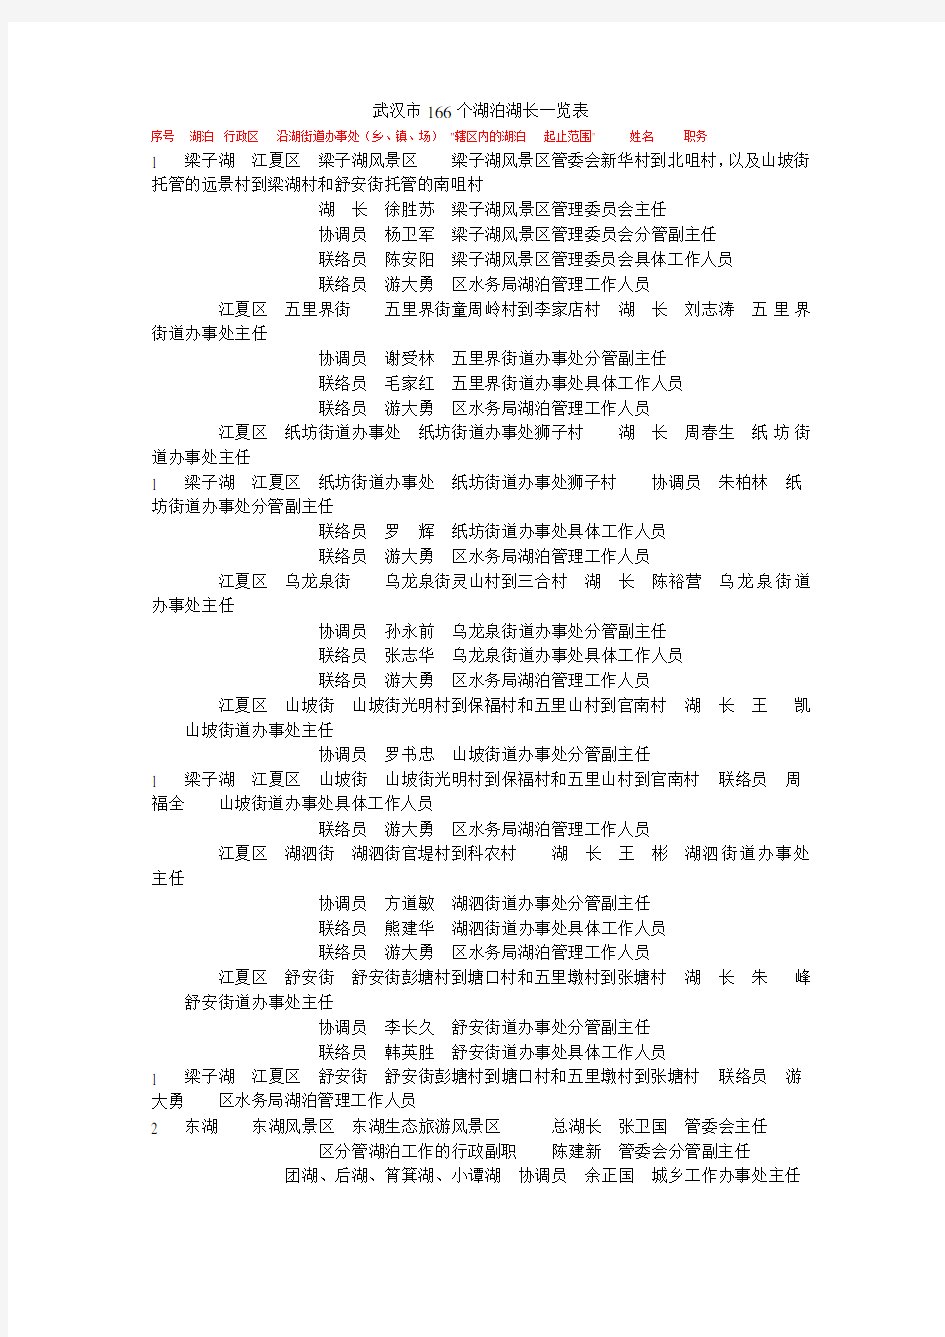 (完整版)武汉市166个湖泊湖长一览表